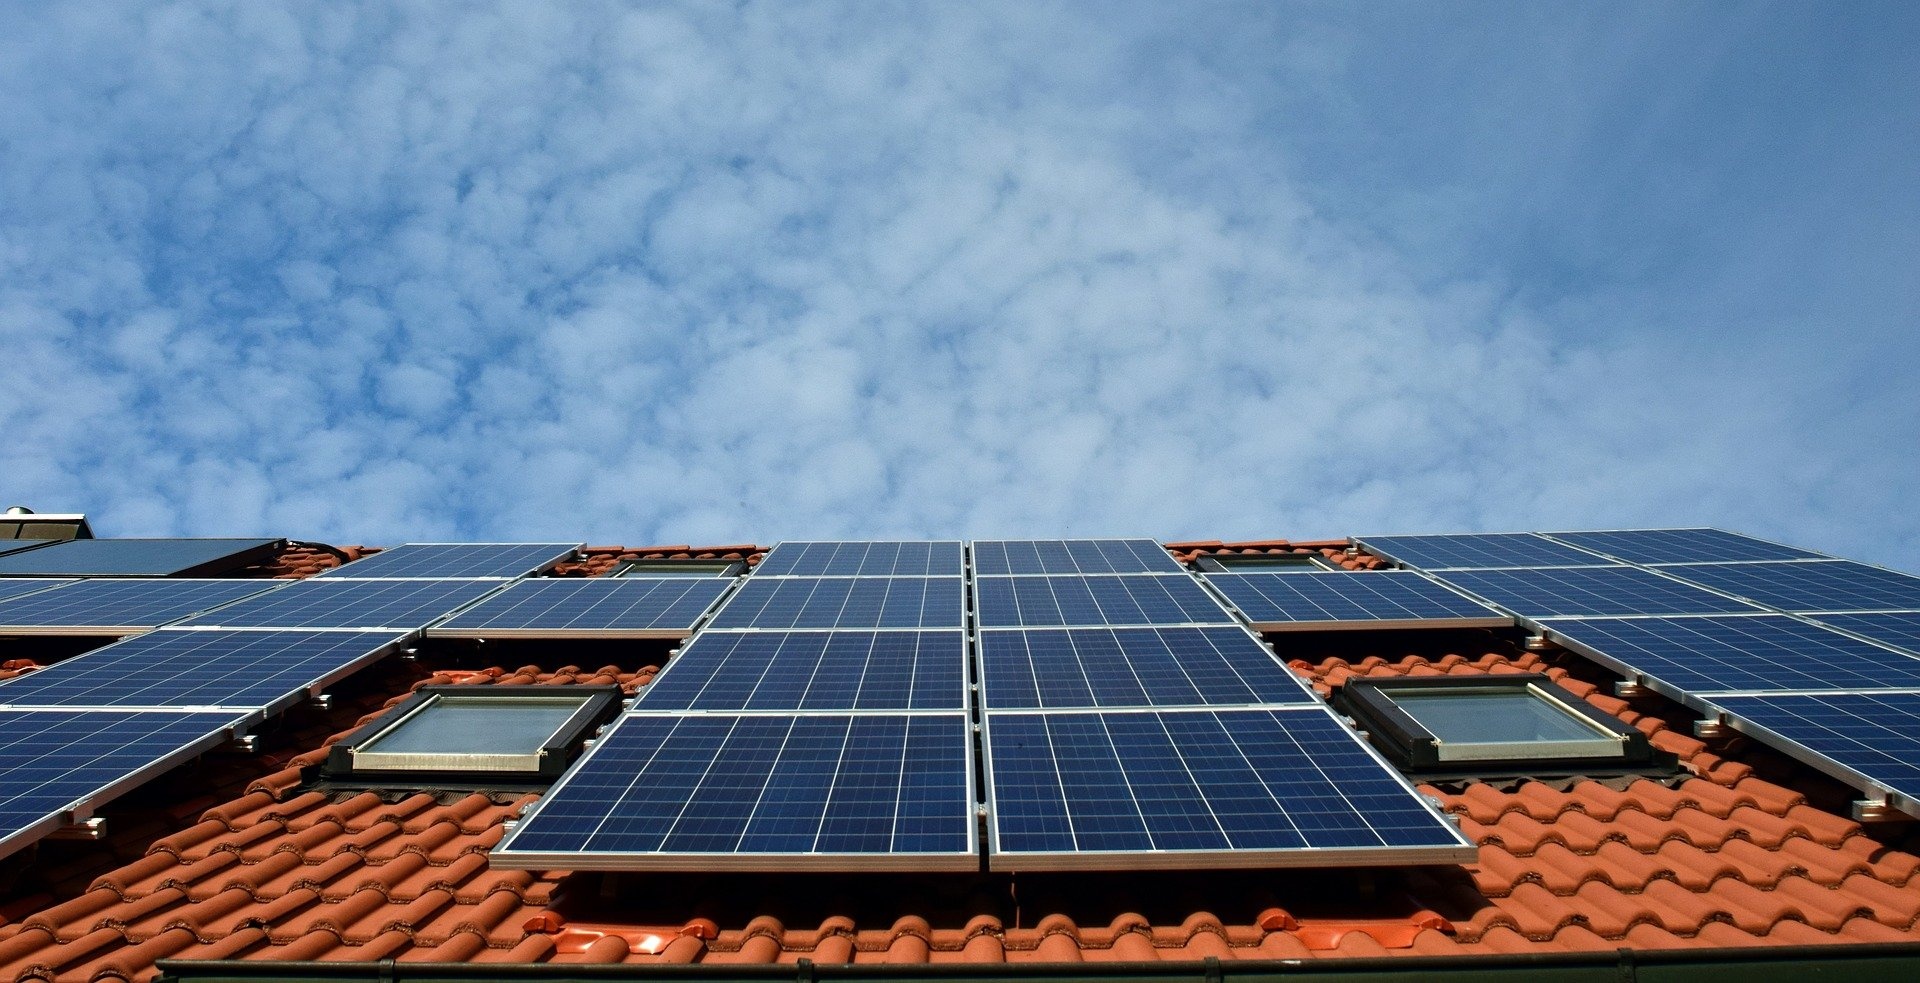 Solarheizung: Kosten, Auslegung, Wirtschaftlichkeit